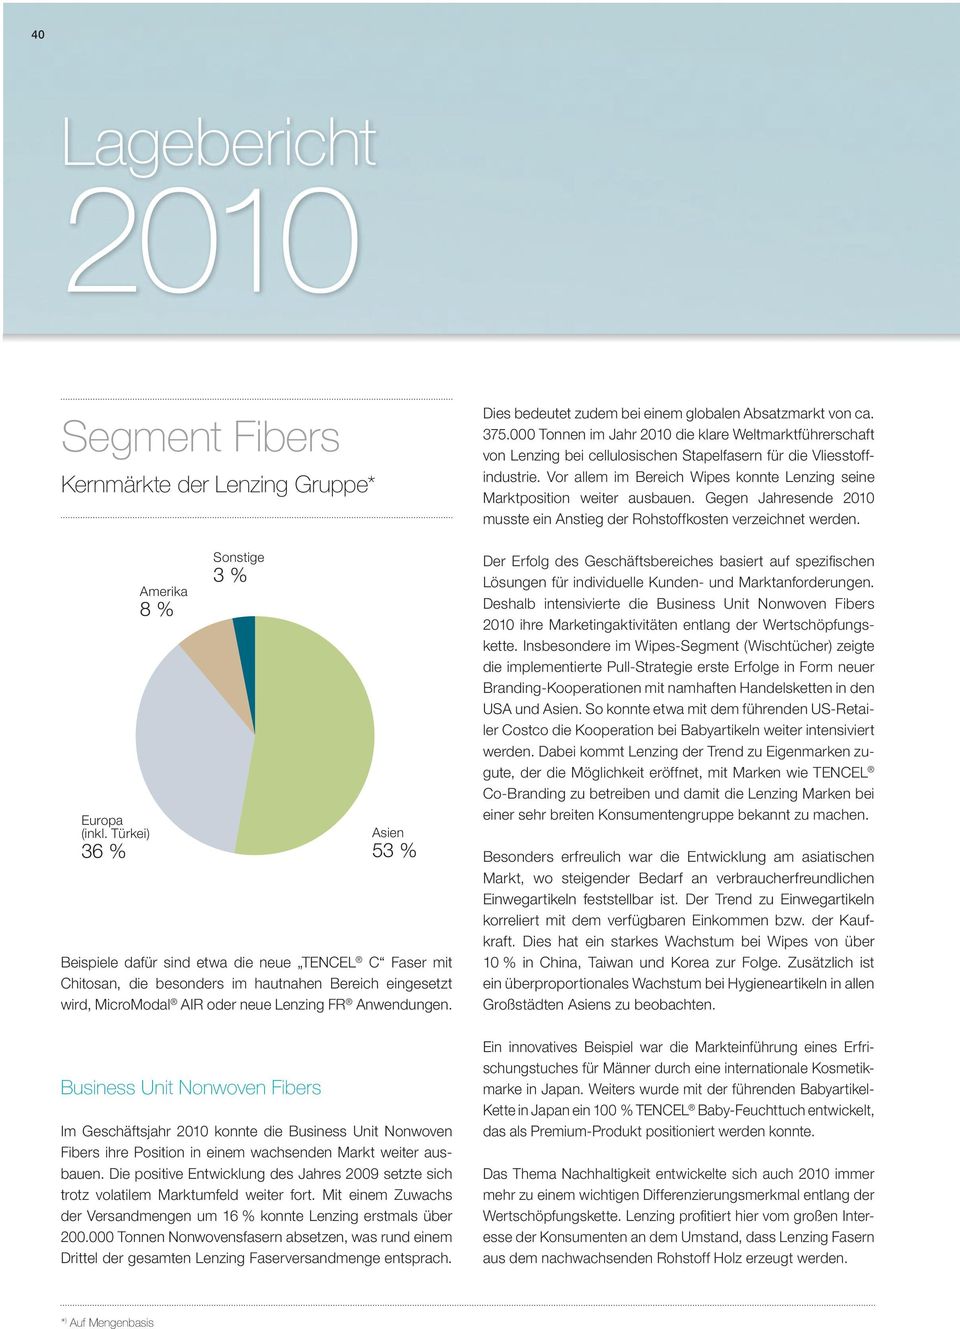 Anwendungen. Business Unit Nonwoven Fibers Asien 53 % Im Geschäftsjahr 2010 konnte die Business Unit Nonwoven Fibers ihre Position in einem wachsenden Markt weiter ausbauen.